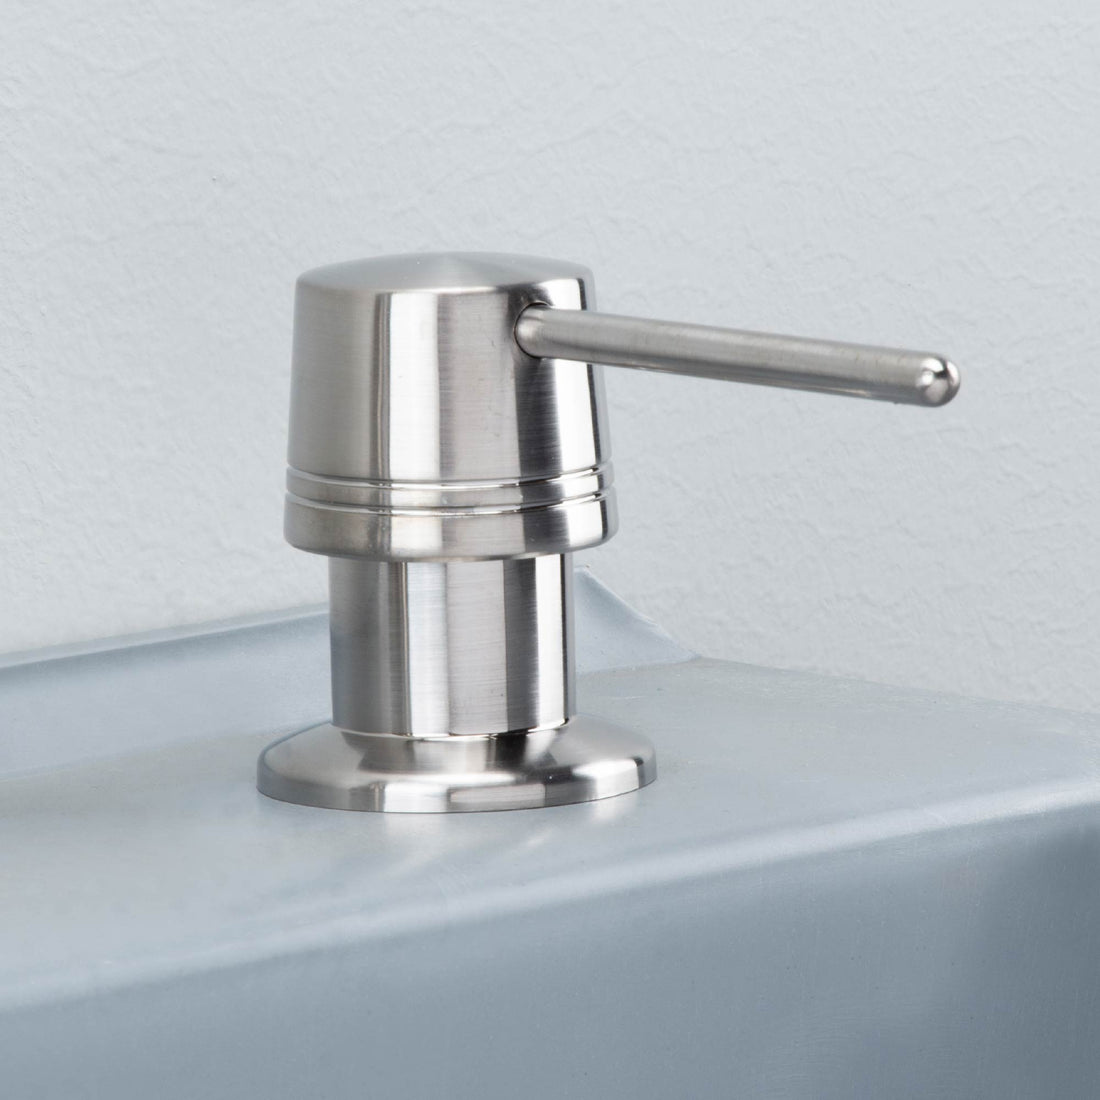 Laundry Tub Soap Dispenser (Stainless Steel Finish) - Utility sinks vanites Tehila